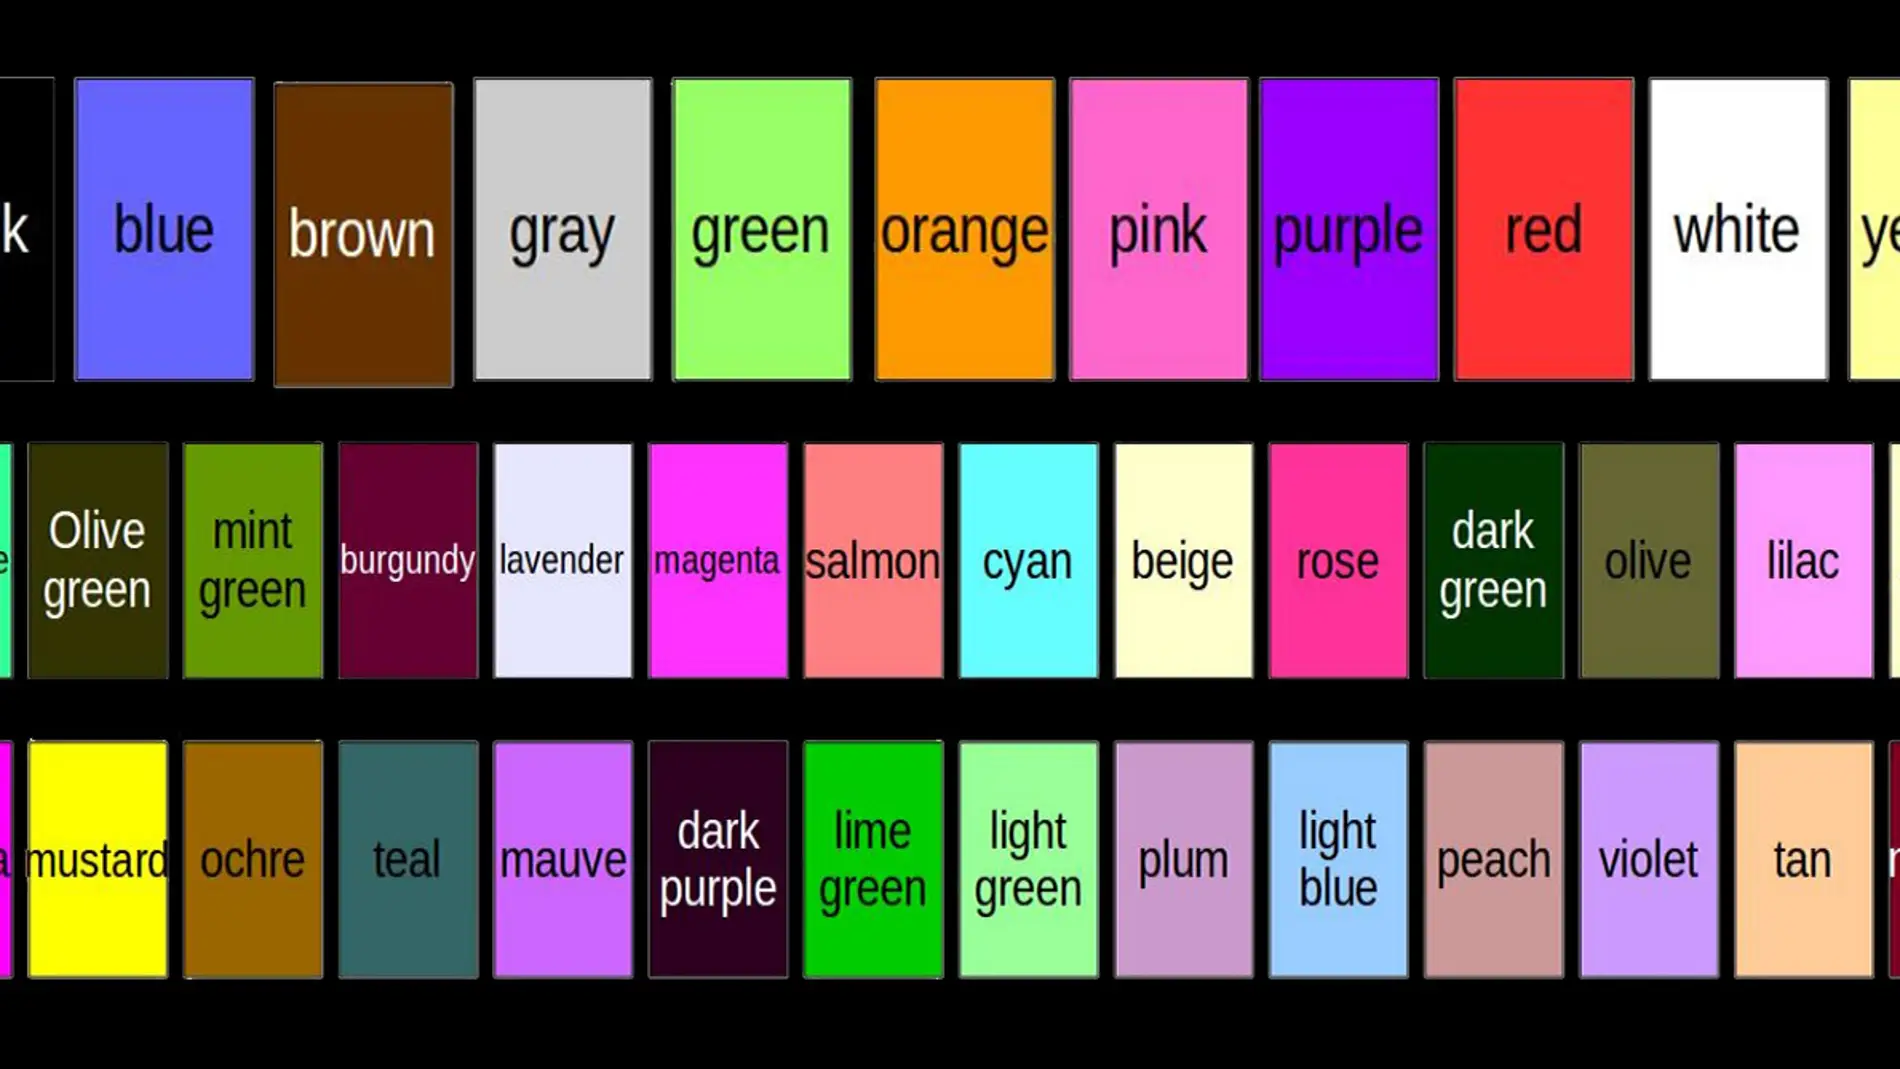 Nuevos nombres para describir mejor los colores